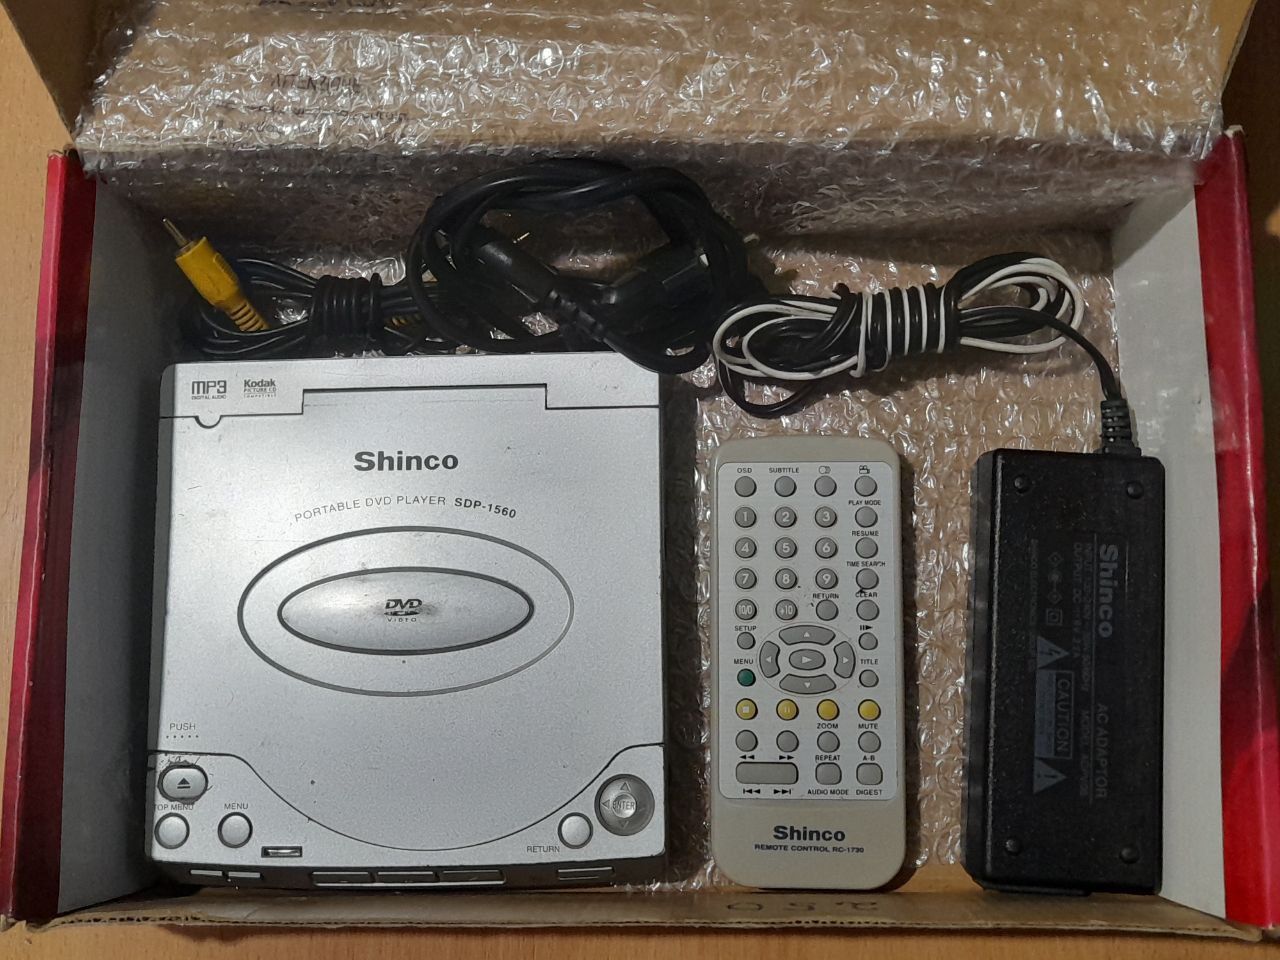 Shinco portable dvd player